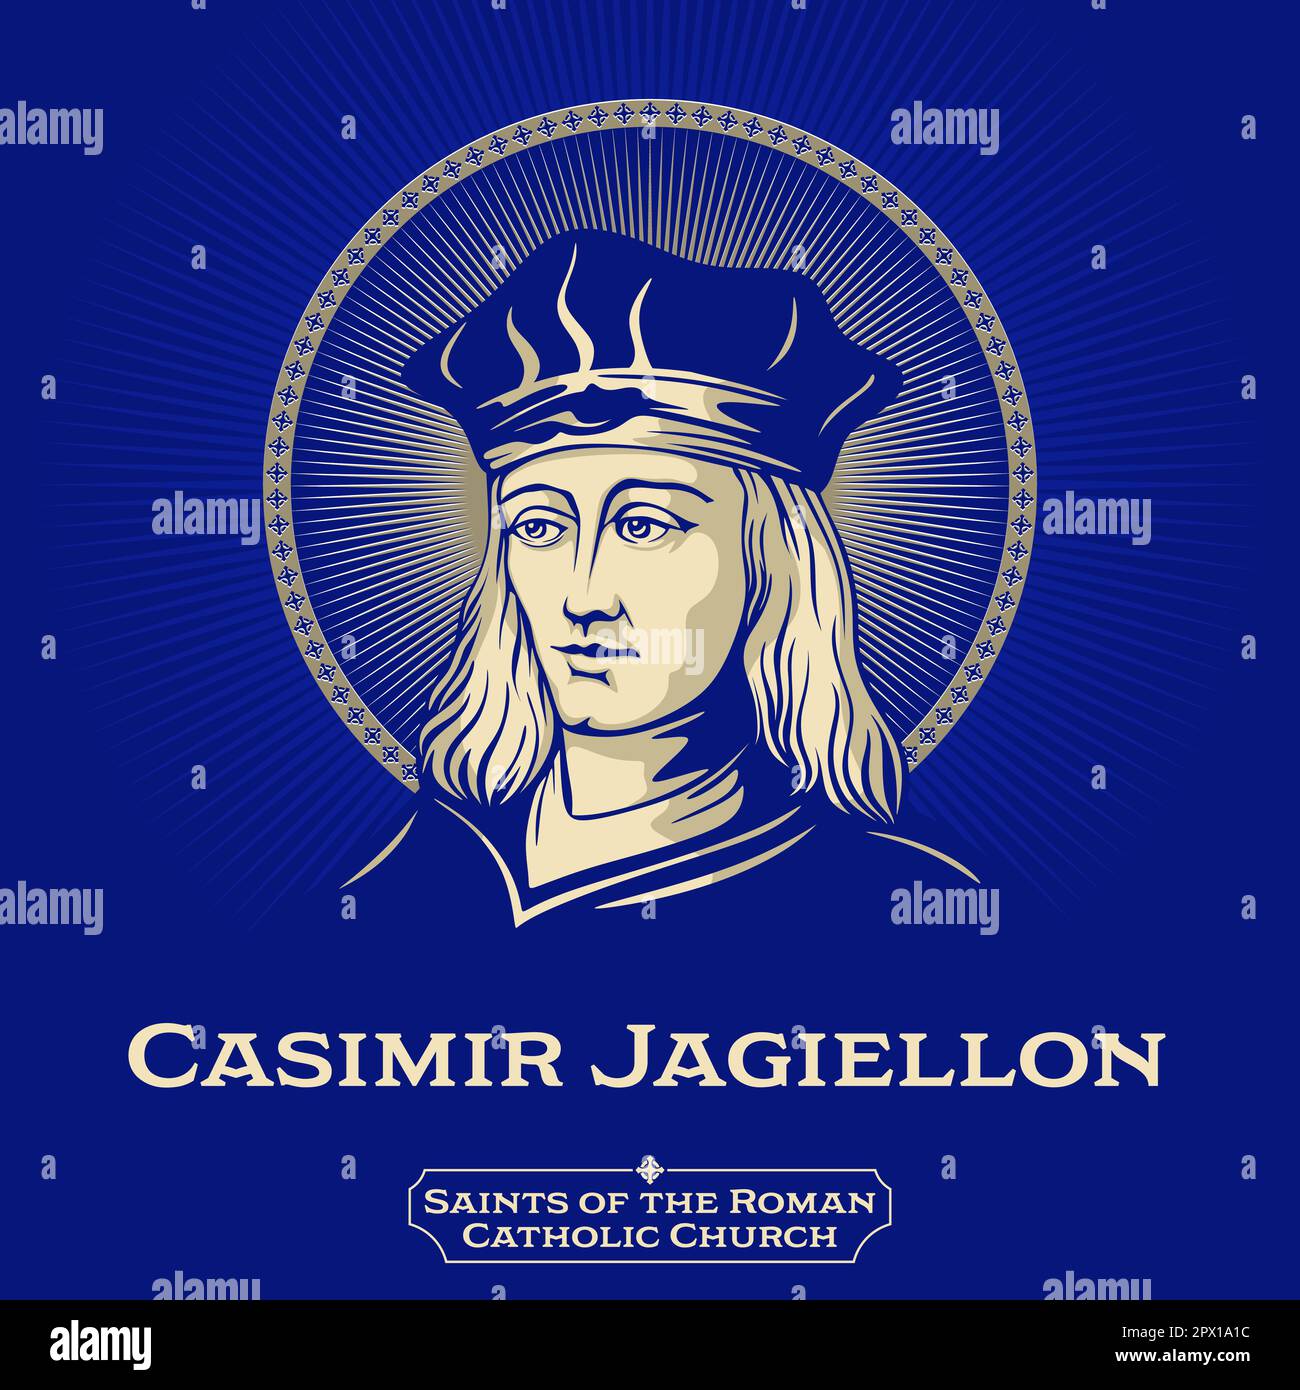 Los santos católicos. Casimir Jagiellon (1458-1484) fue un príncipe del Reino de Polonia y del Gran Ducado de Lituania. Ilustración del Vector